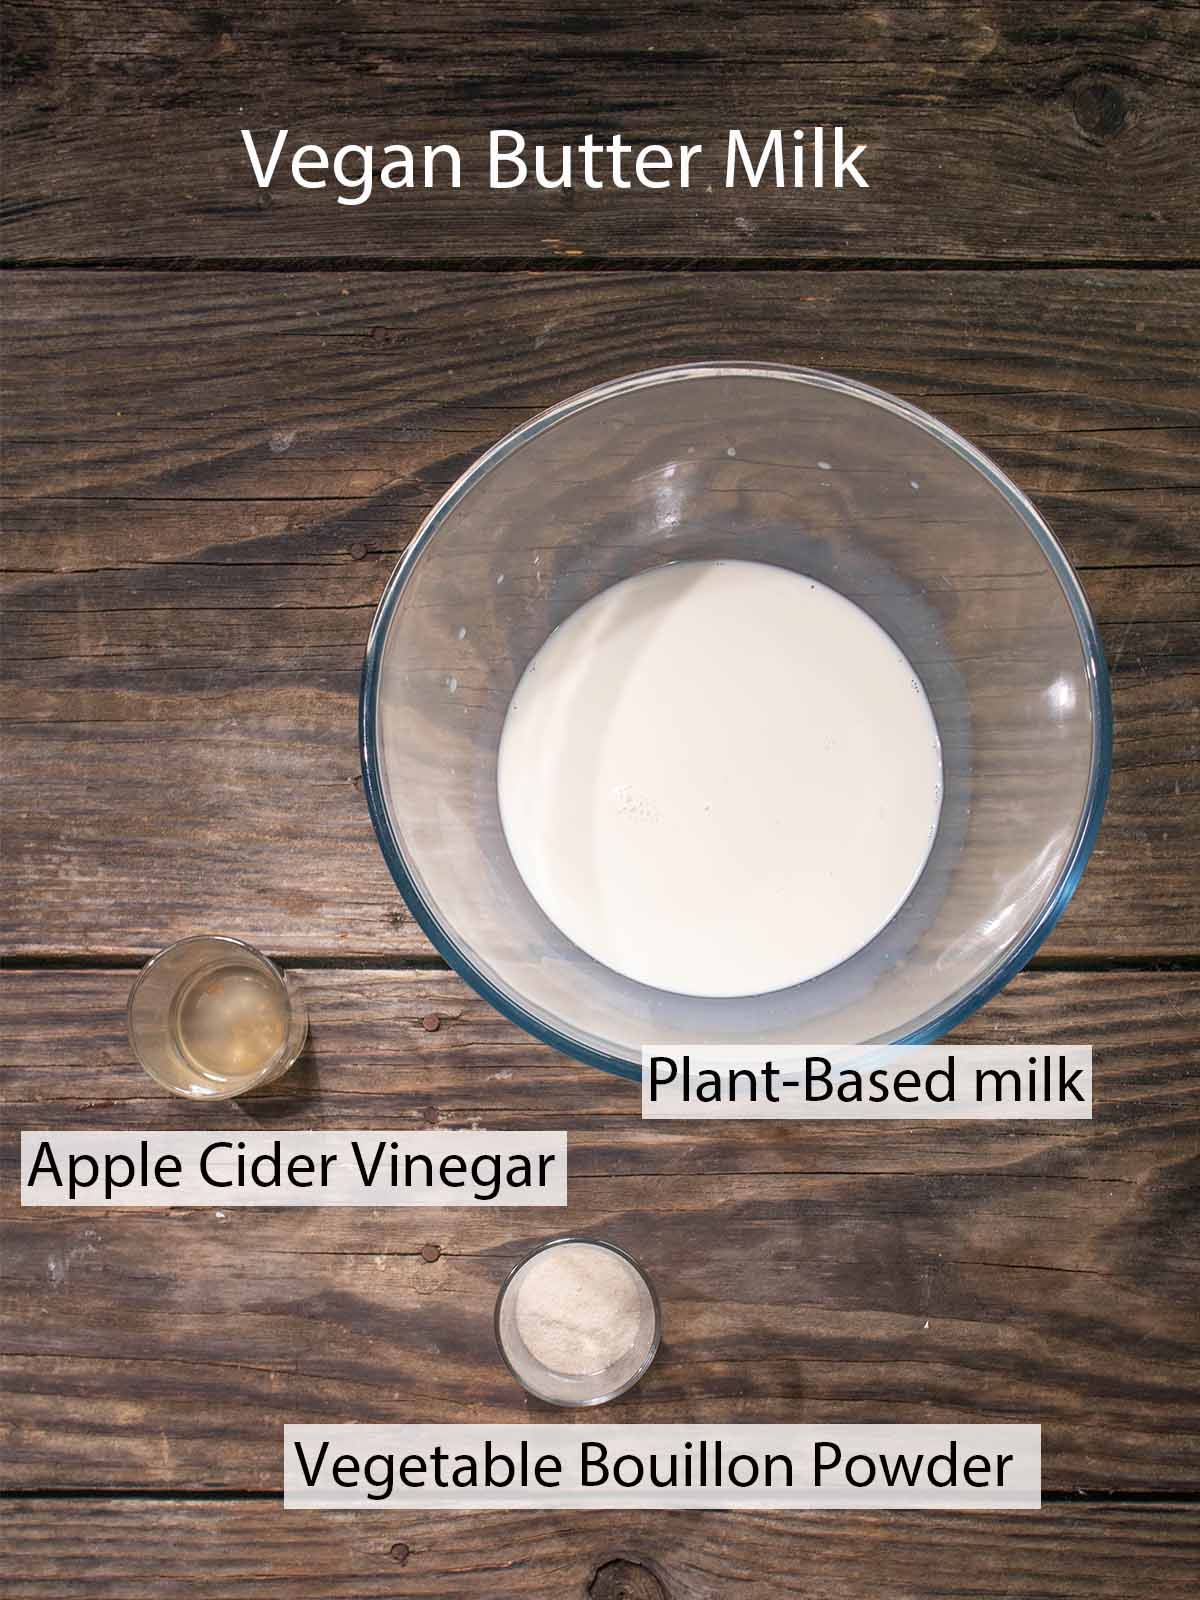 ingredients for vegan butter milk